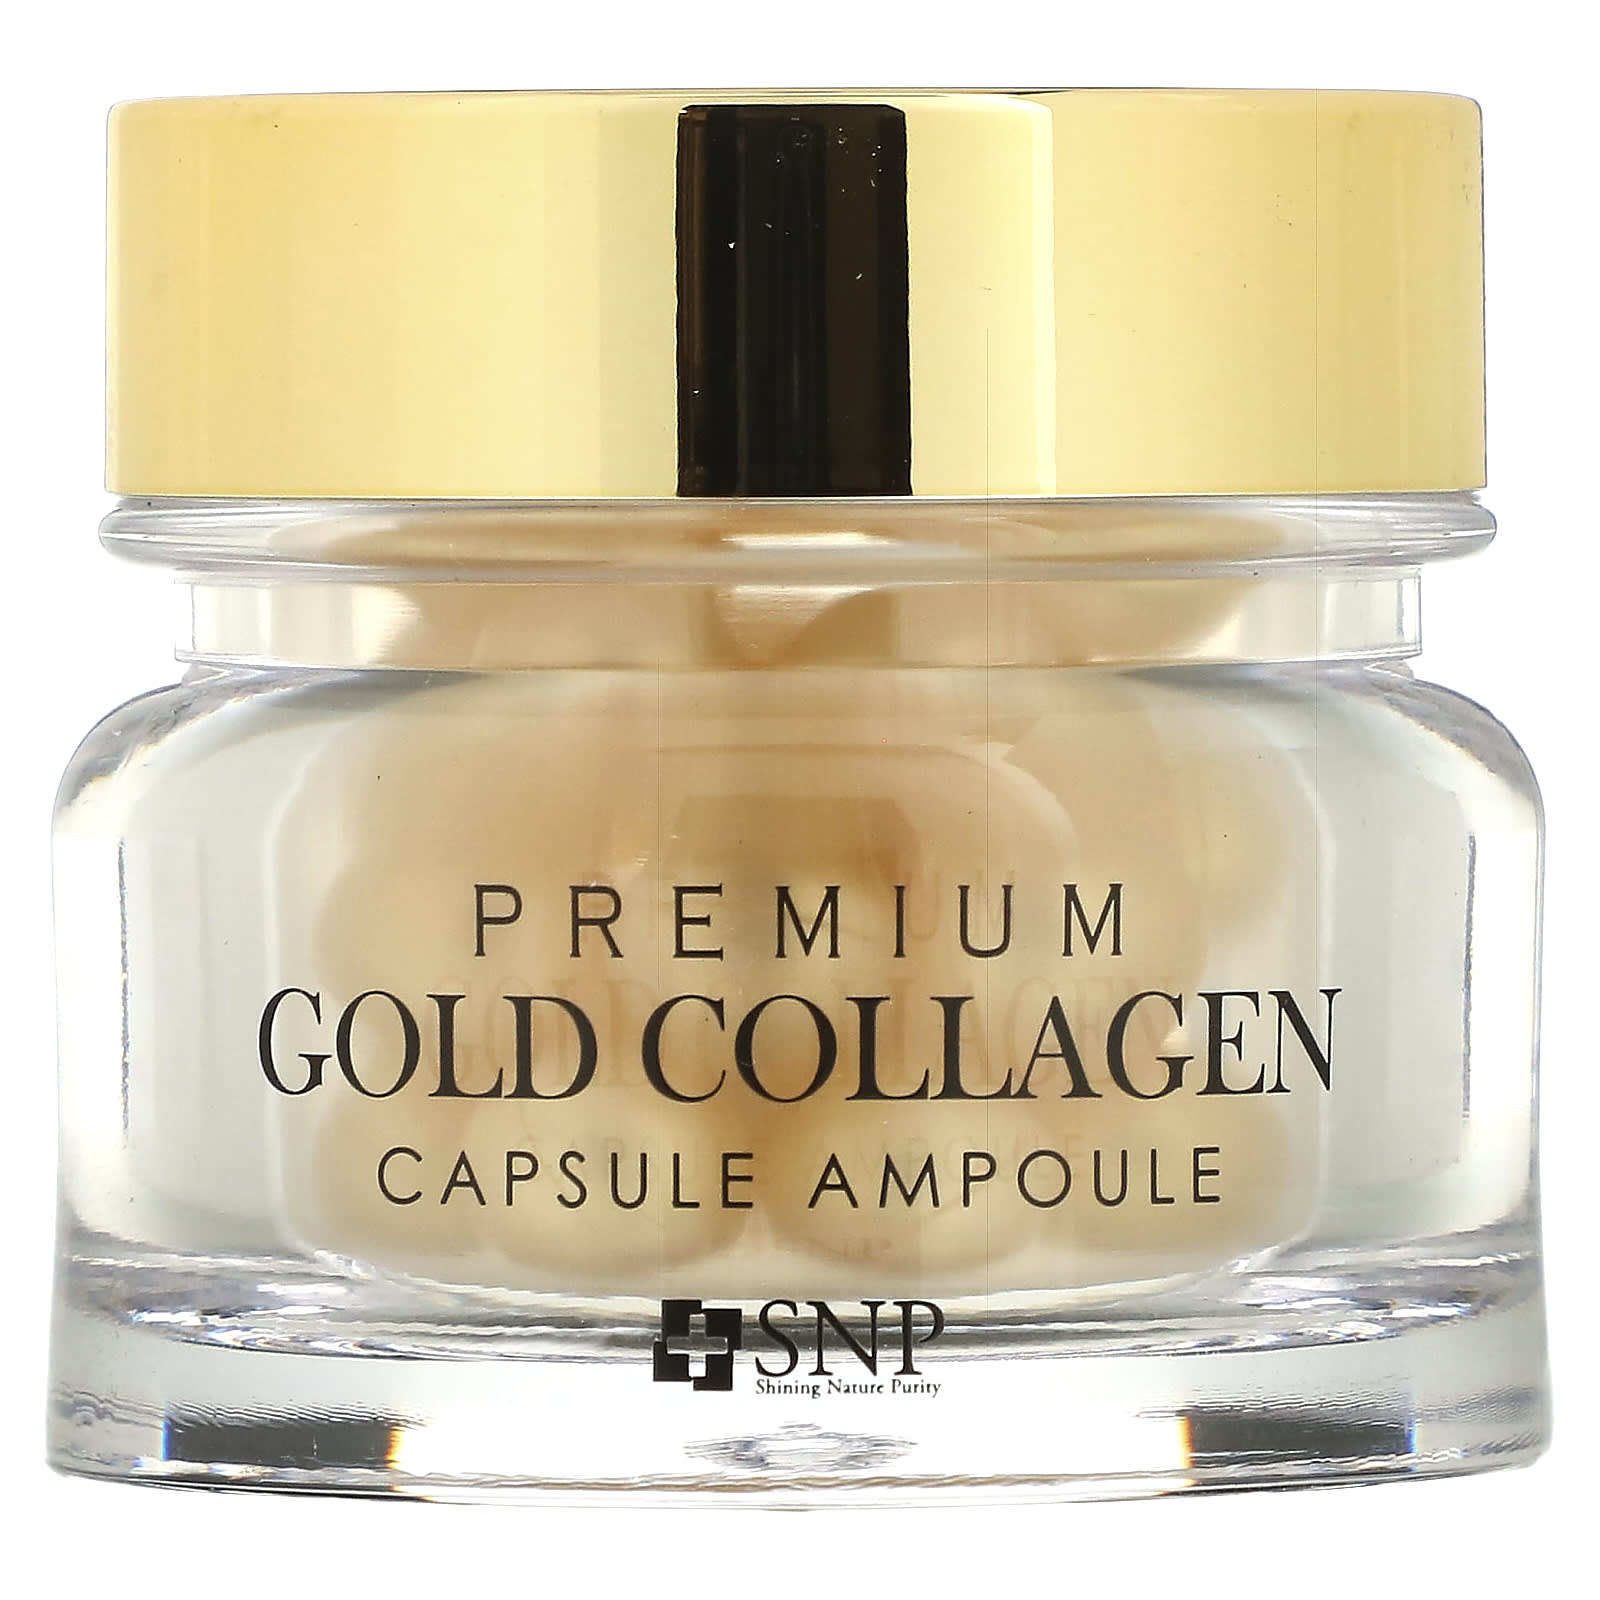 Genealogie periodieke Voorstel SNP, Premium Gold Collagen Capsule Ampoule, 30 Capsules